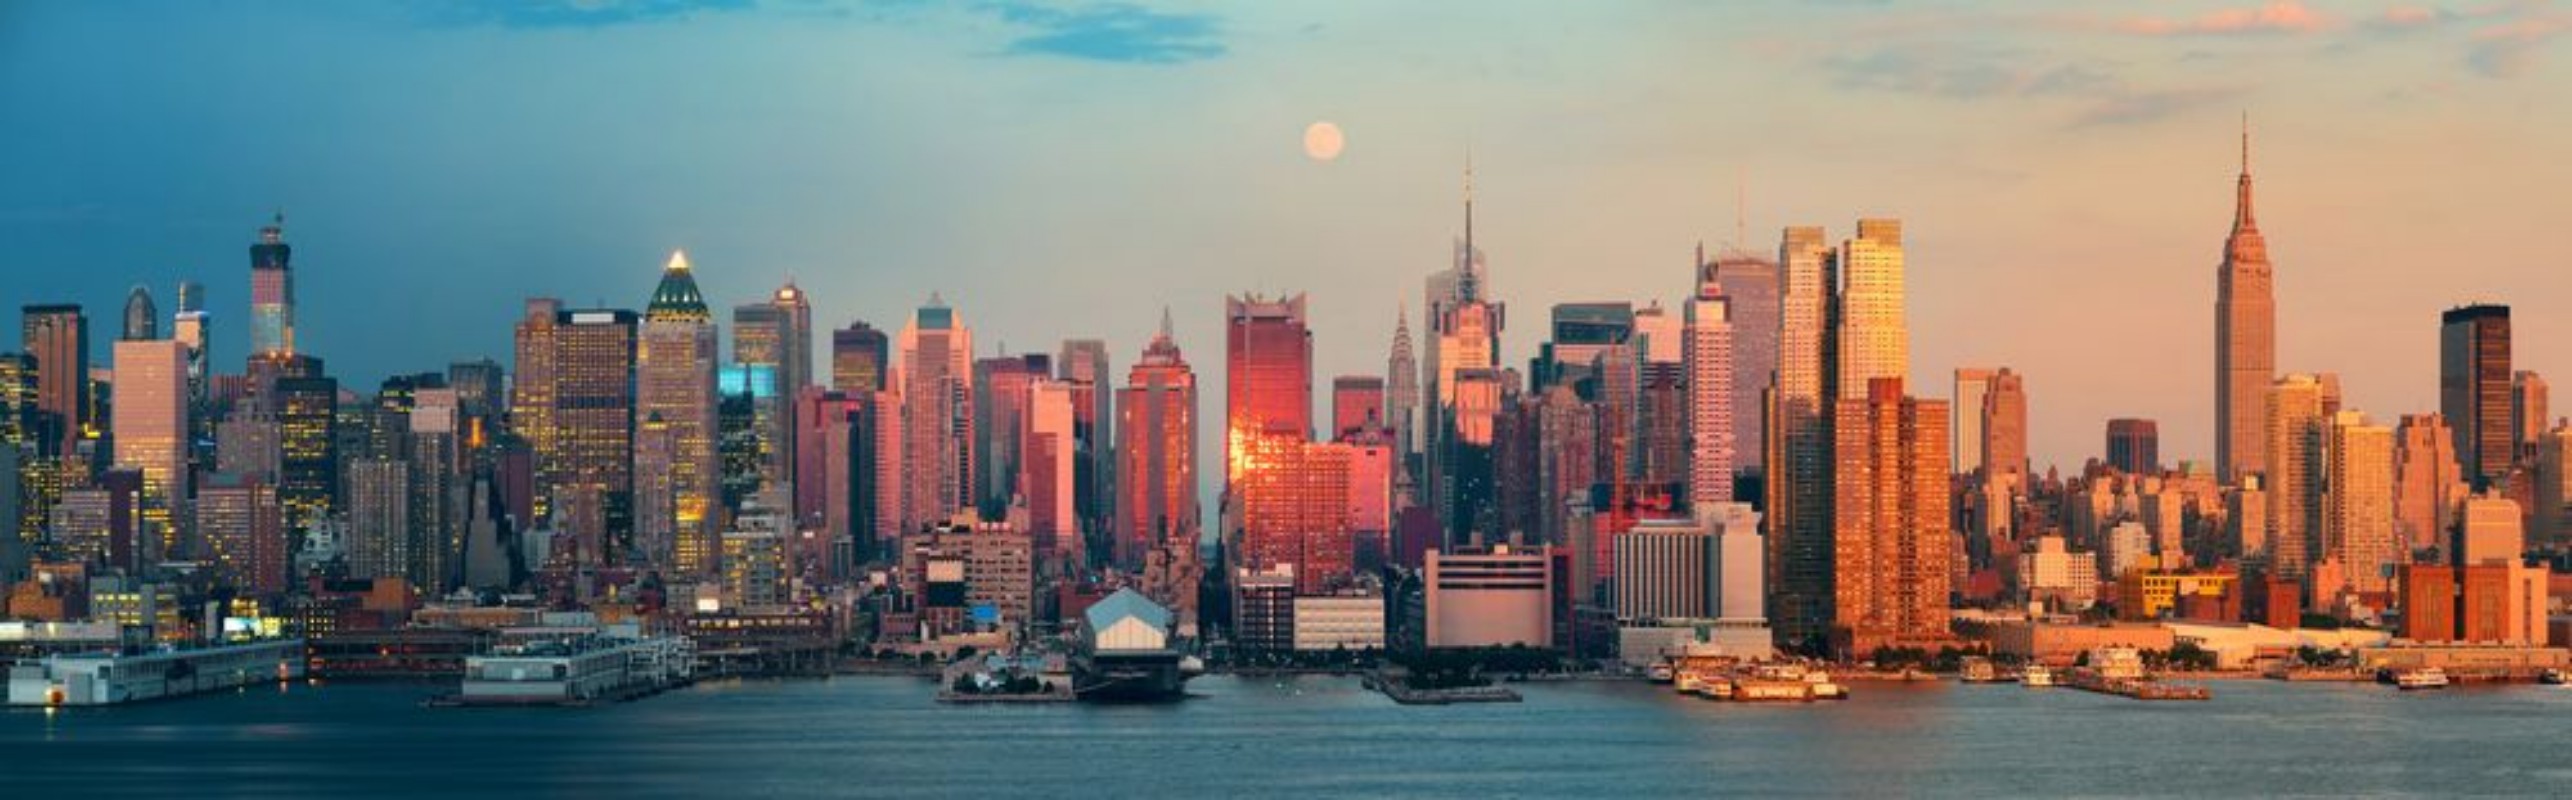 Image de New York City skyscrapers